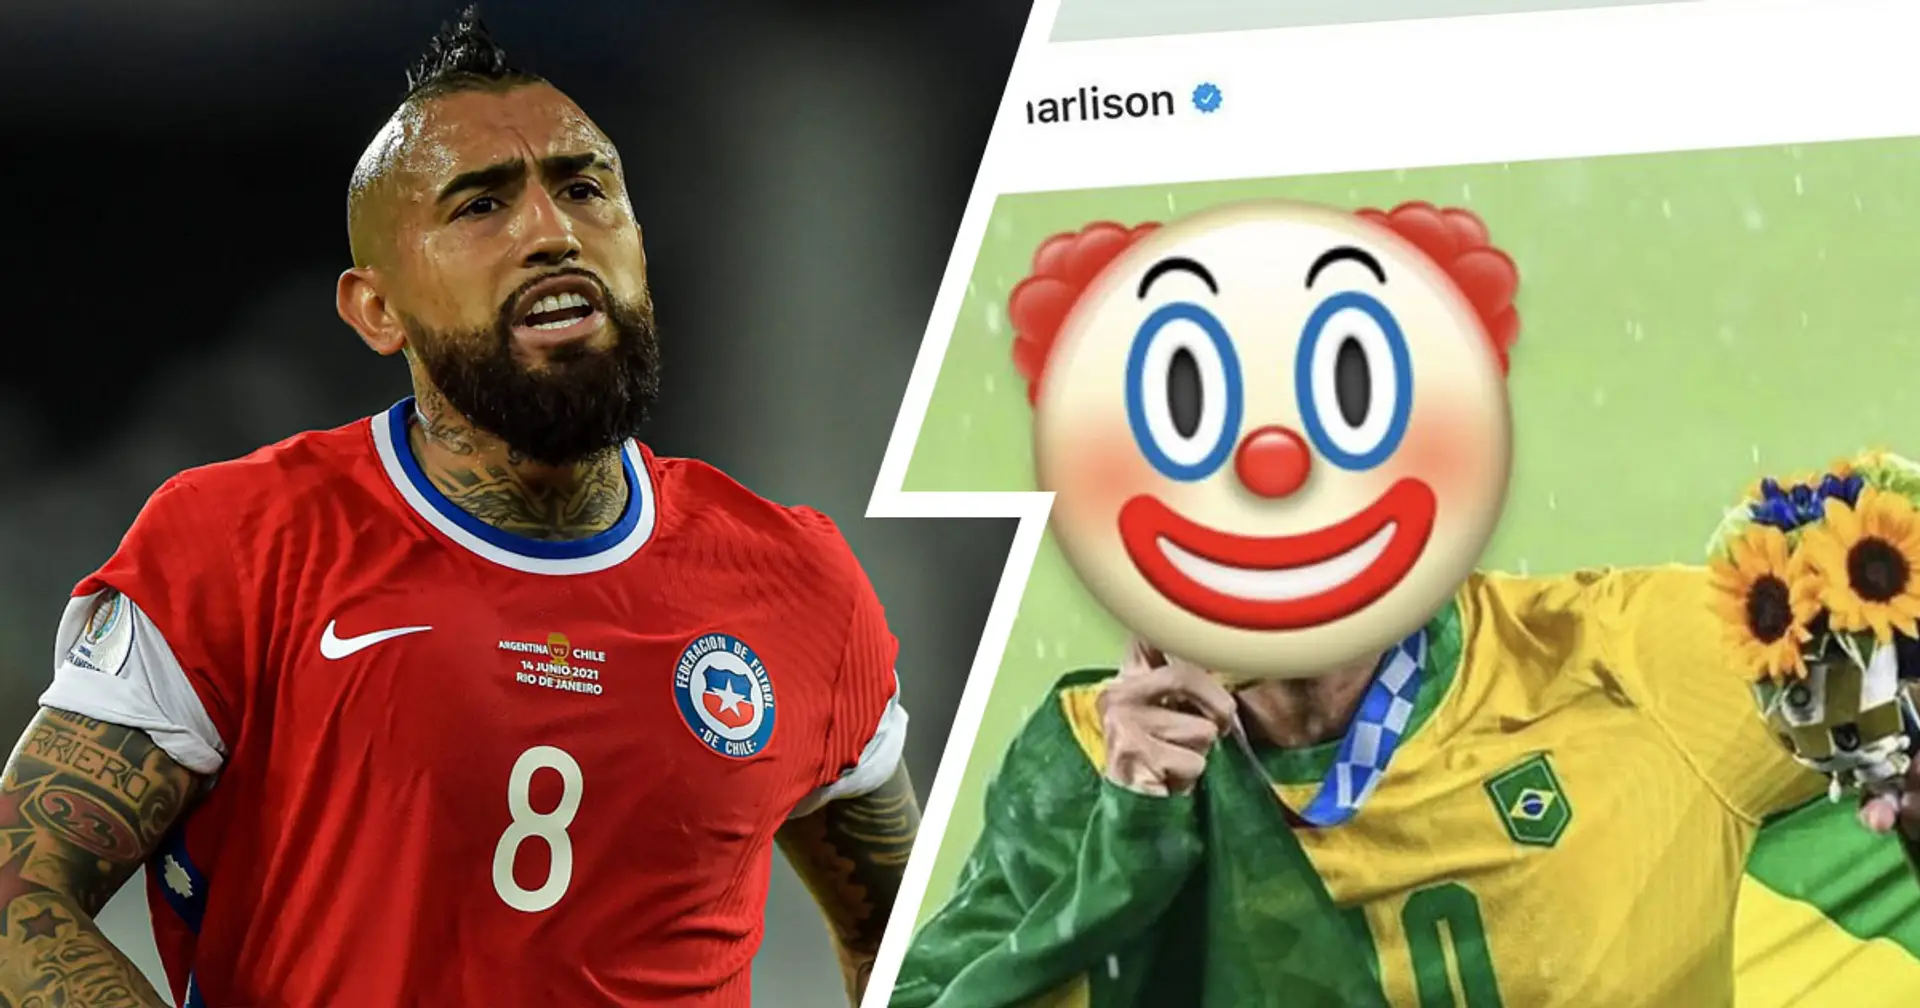 Arturo Vidal qualifie la star brésilienne Richarlison de "clown" après avoir insulté son l'entraîneur